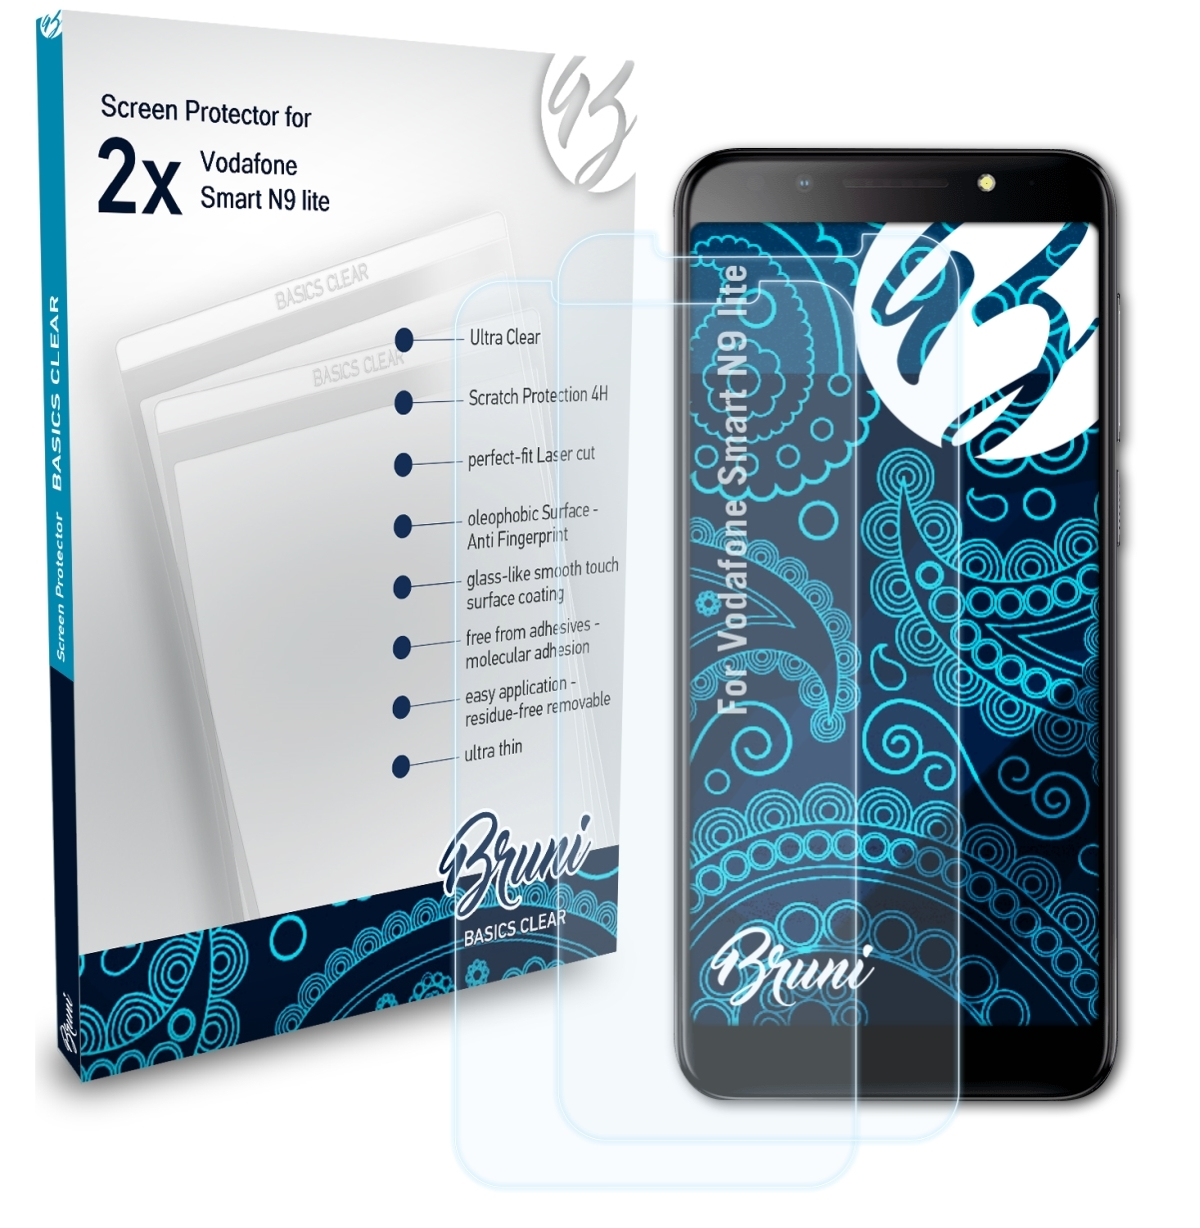 BRUNI 2x Basics-Clear N9 lite) Smart Vodafone Schutzfolie(für